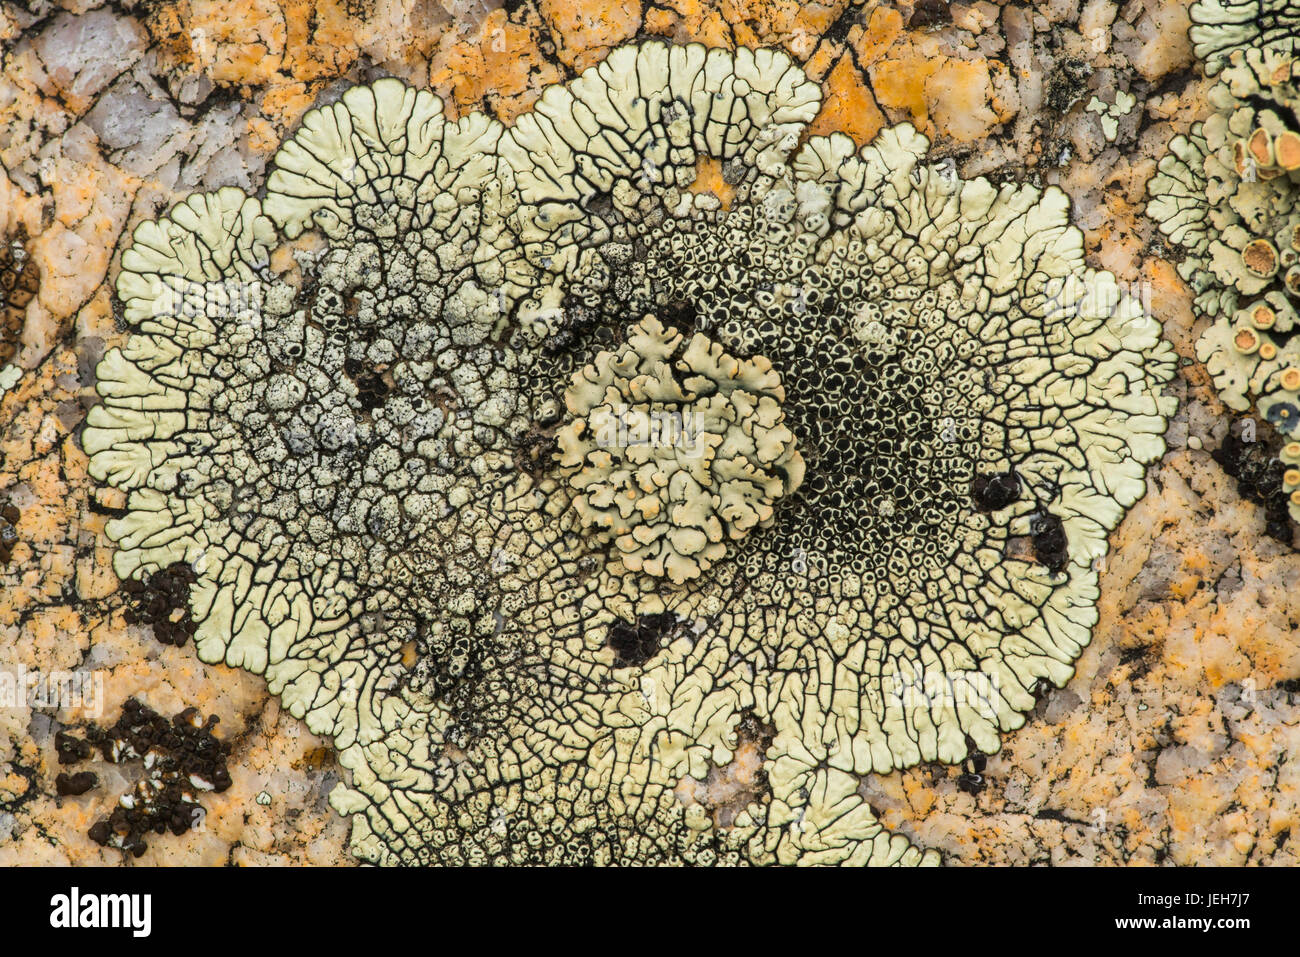 Lichen on rock, Grasslands National Park; Saskatchewan, Canada Stock Photo